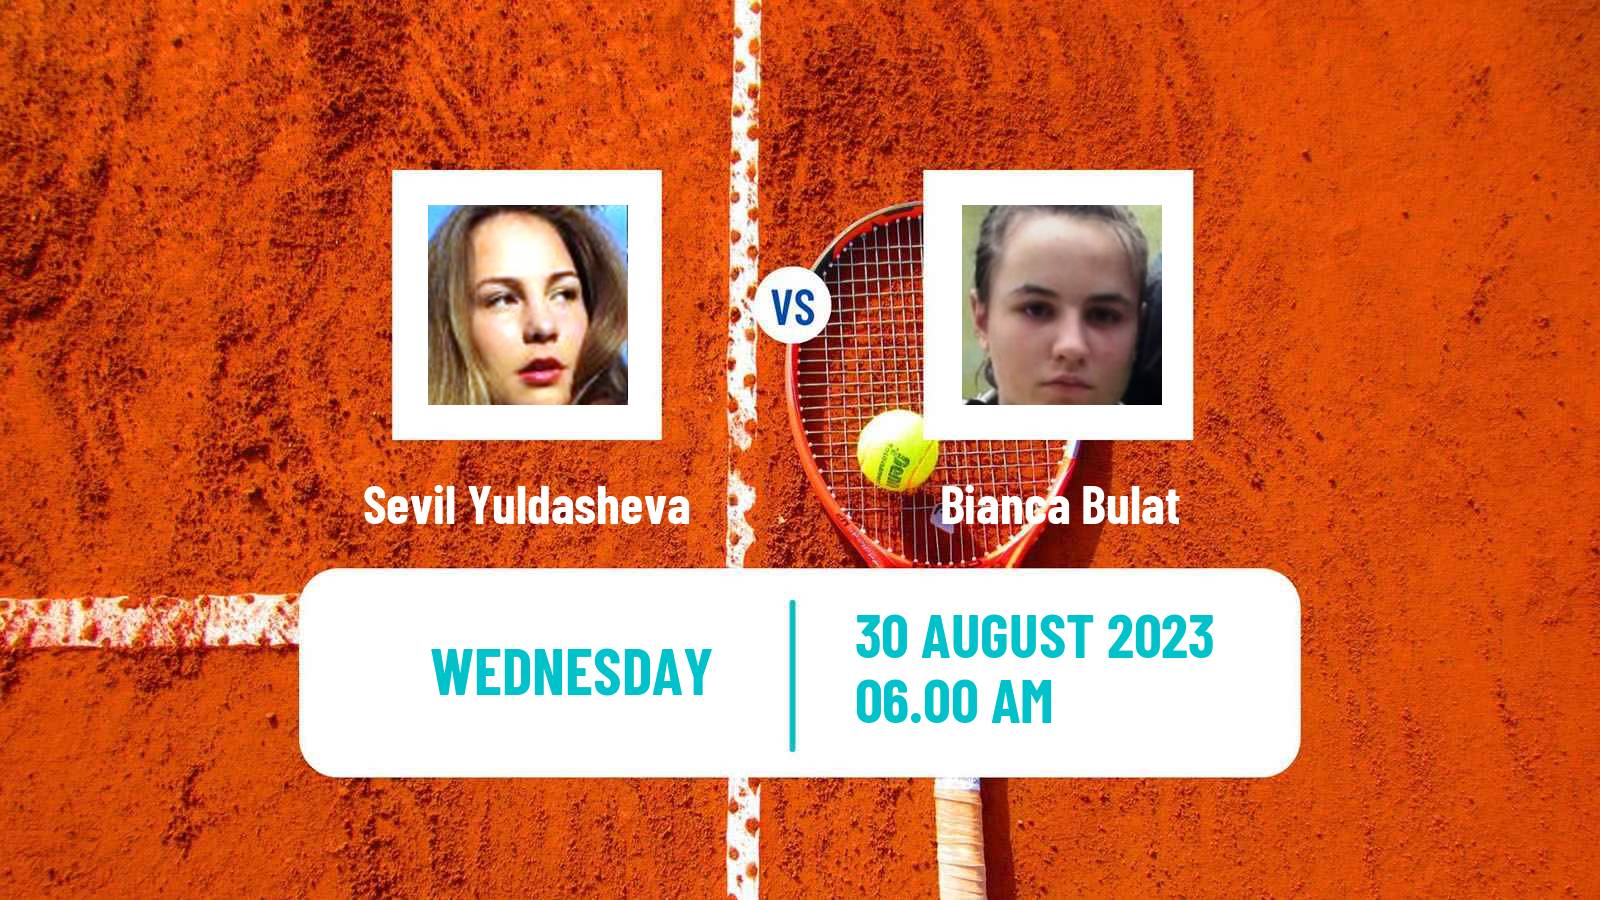 Tennis ITF W15 Brasov 2 Women Sevil Yuldasheva - Bianca Bulat